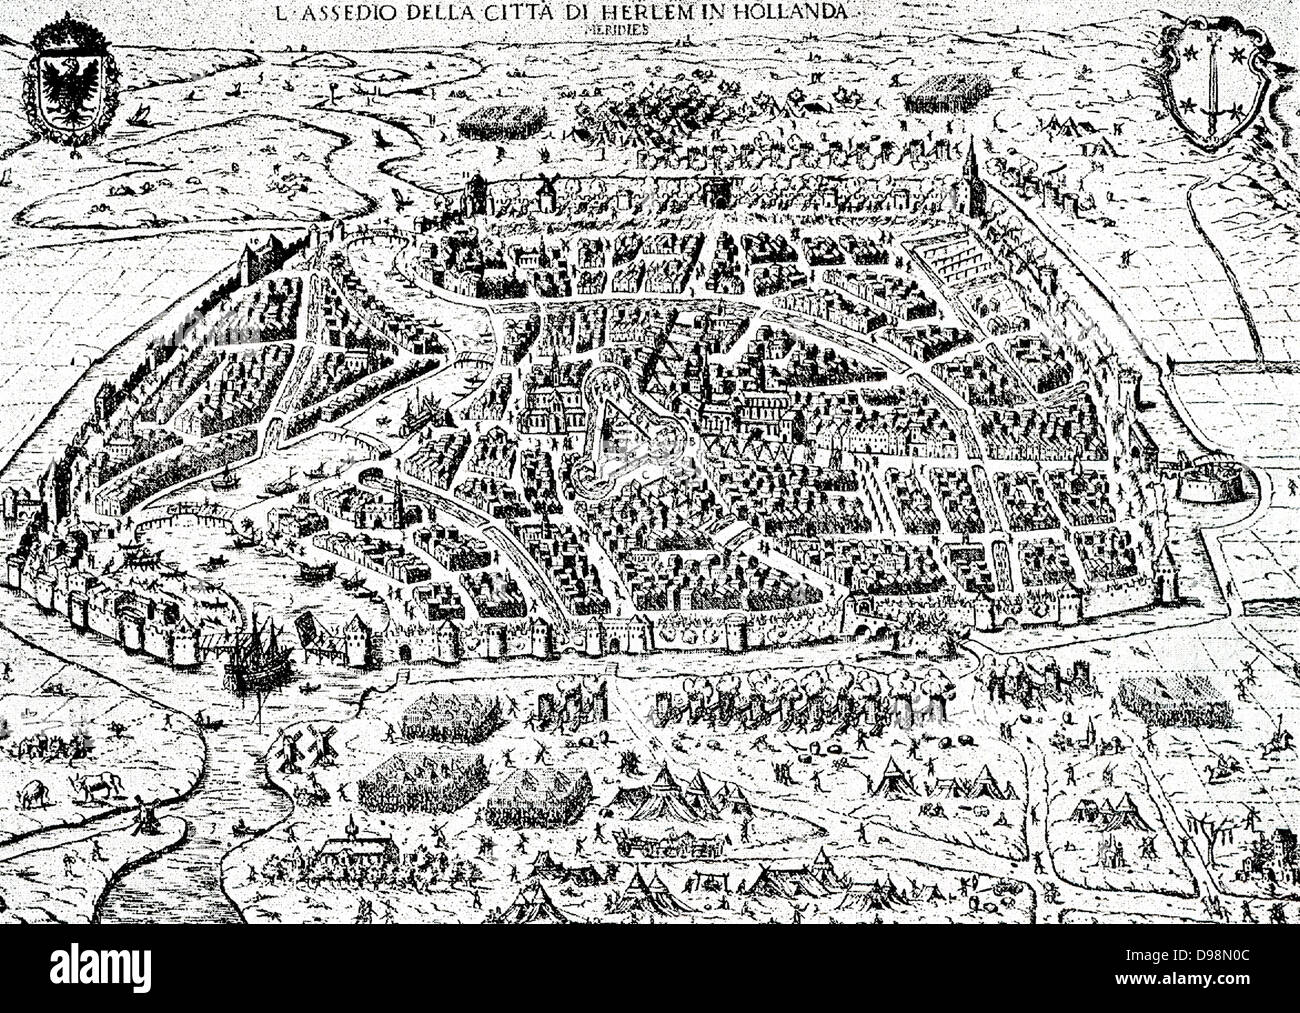 Die Belagerung von Haarlem war eine Episode des 80-jährigen Krieges. Ab 11. Dezember 1572 bis 13. Juli 1573 eine Armee von Philipp II. von Spanien blutigen Belagerung der Stadt Haarlem in den Niederlanden, deren Loyalitäten begonnen hatte, schwankte im vergangenen Sommer. Nach der Seeschlacht von Haarlemmermeer und der Niederlage von einem Land relief Kraft, die hungernde Stadt übergab und die Garnison wurde massakriert. Der Widerstand trotzdem wurde als heroische Beispiel durch die Orangists an der Belagerungen von Alkmaar und Leiden. Stockfoto